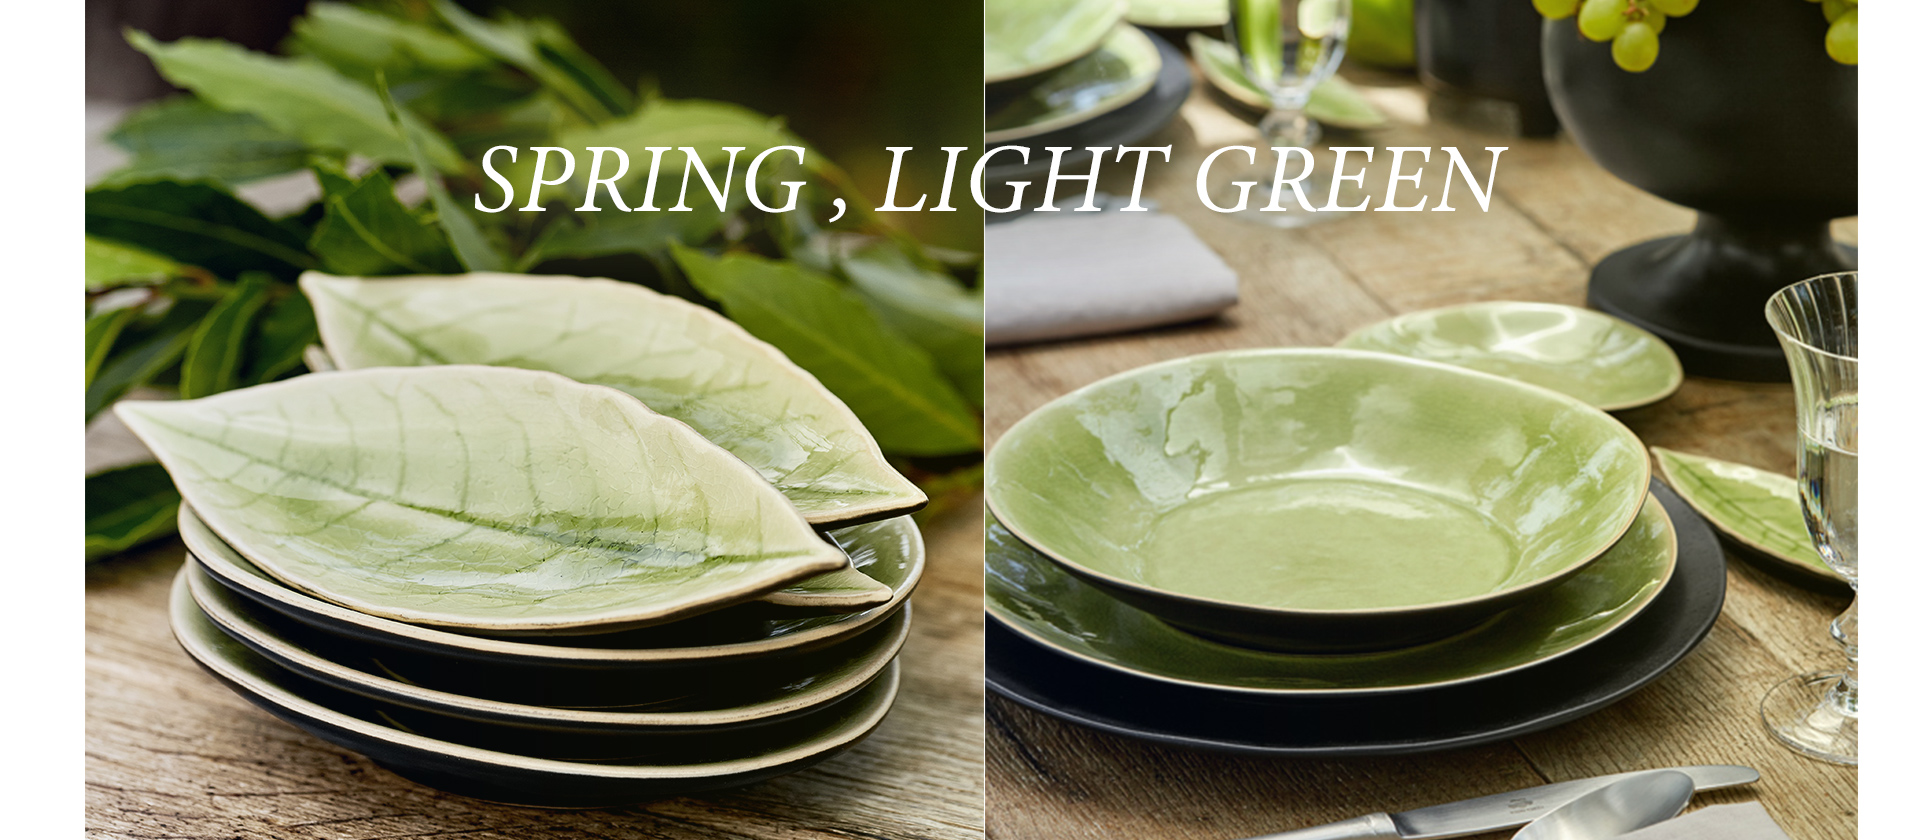 ポルトガル食器ブランドCOSTA NOVA、イギリスのStonecastの食器は、自然をモチーフにした明るい色の食器が揃います。今の季節にぴったりのあかるい緑色の食器を集めました